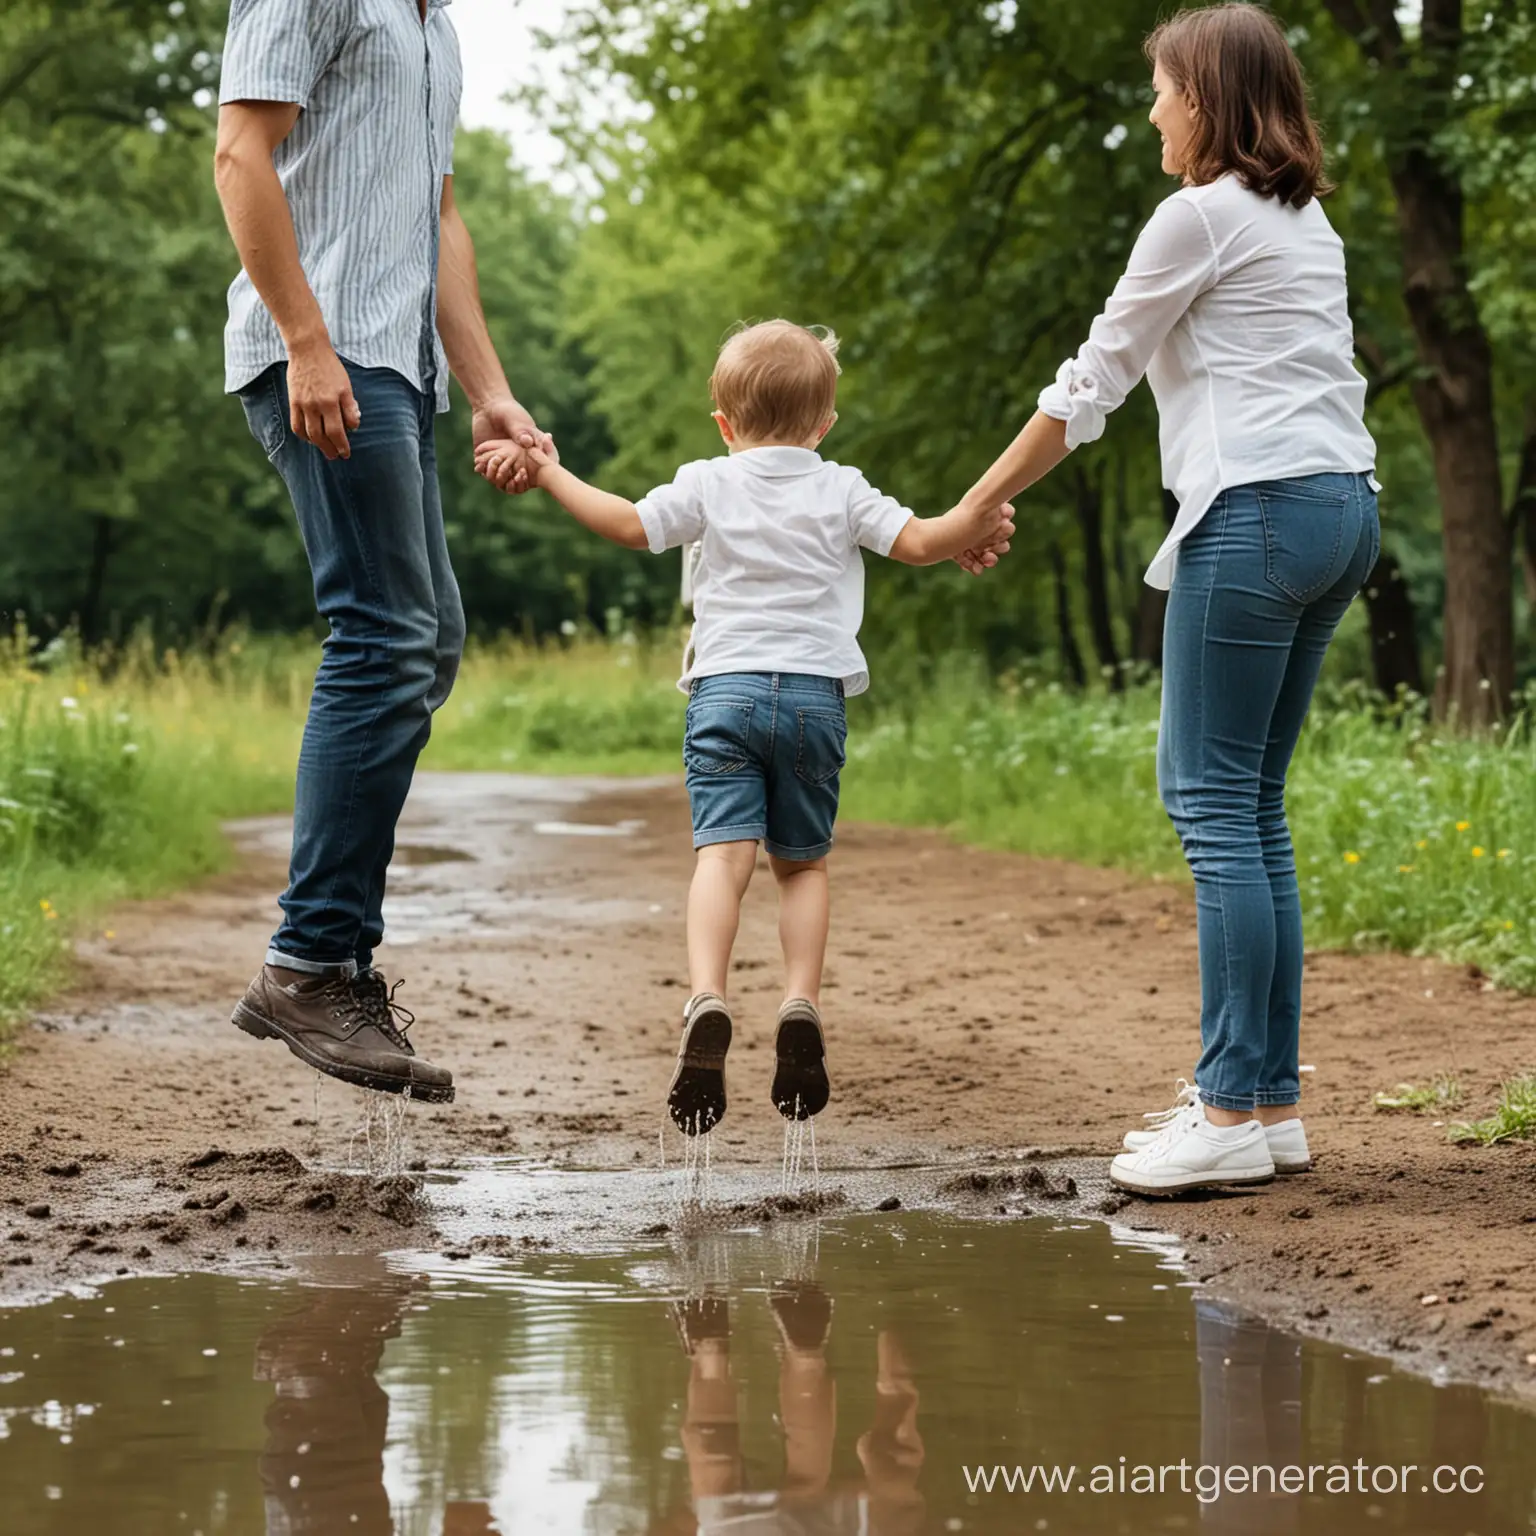 Время года лето и дружная семья гуляет в парке, сын перепрыгивает через лужу, а мама и папа держут его за руки и помогают ему перепрыгнуть